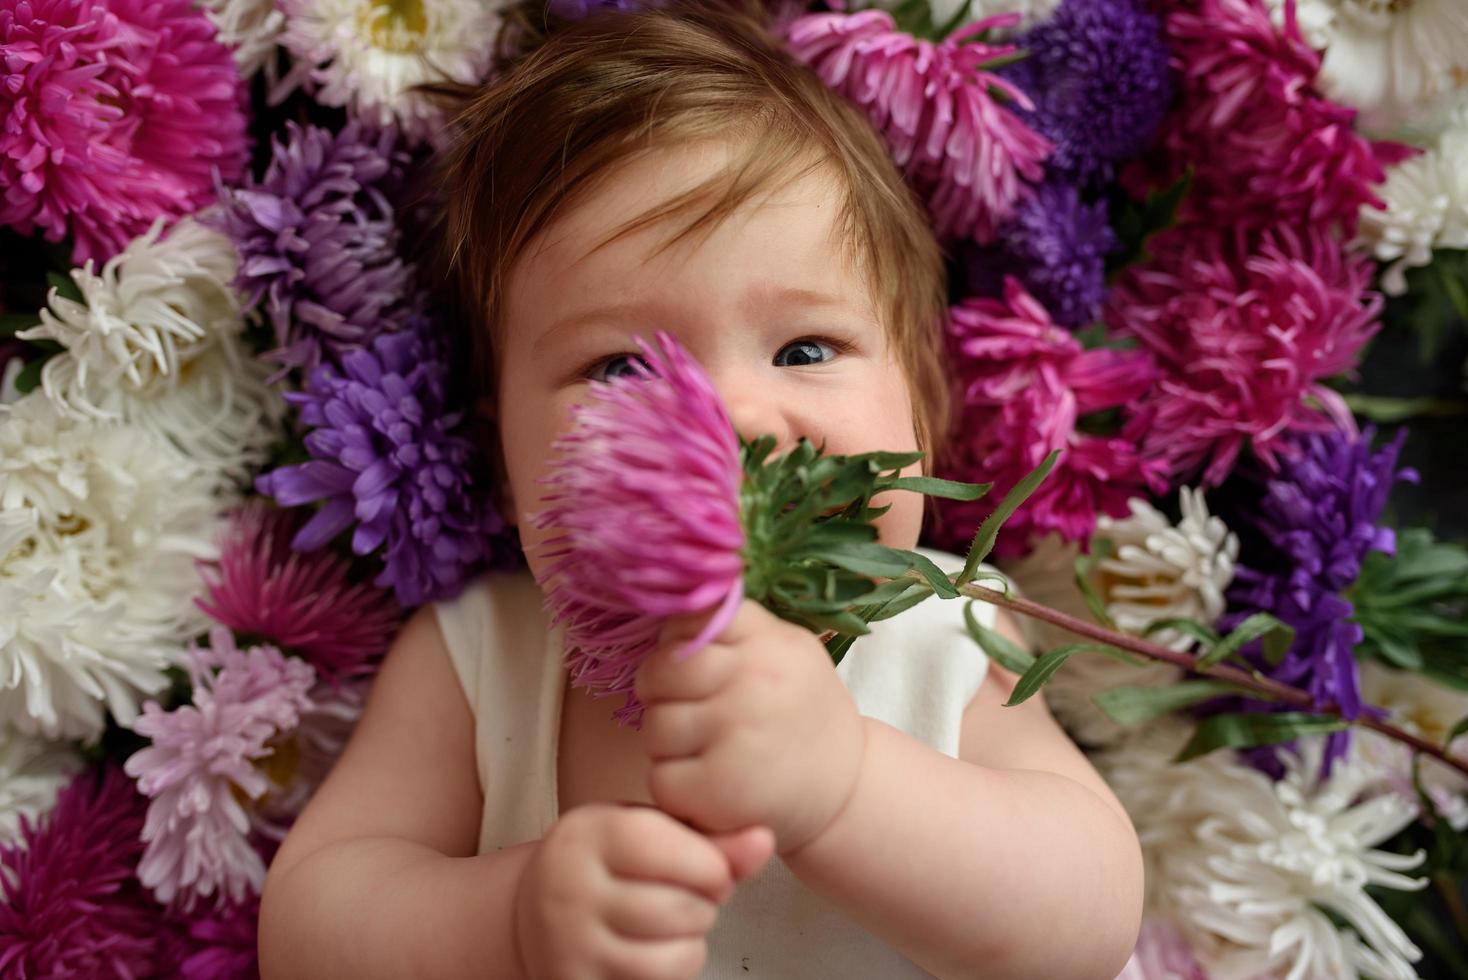 niña en vestido azul jugando con ramo de tulipanes rosas. niño pequeño en casa en la guardería soleada. niño divirtiéndose con flores foto